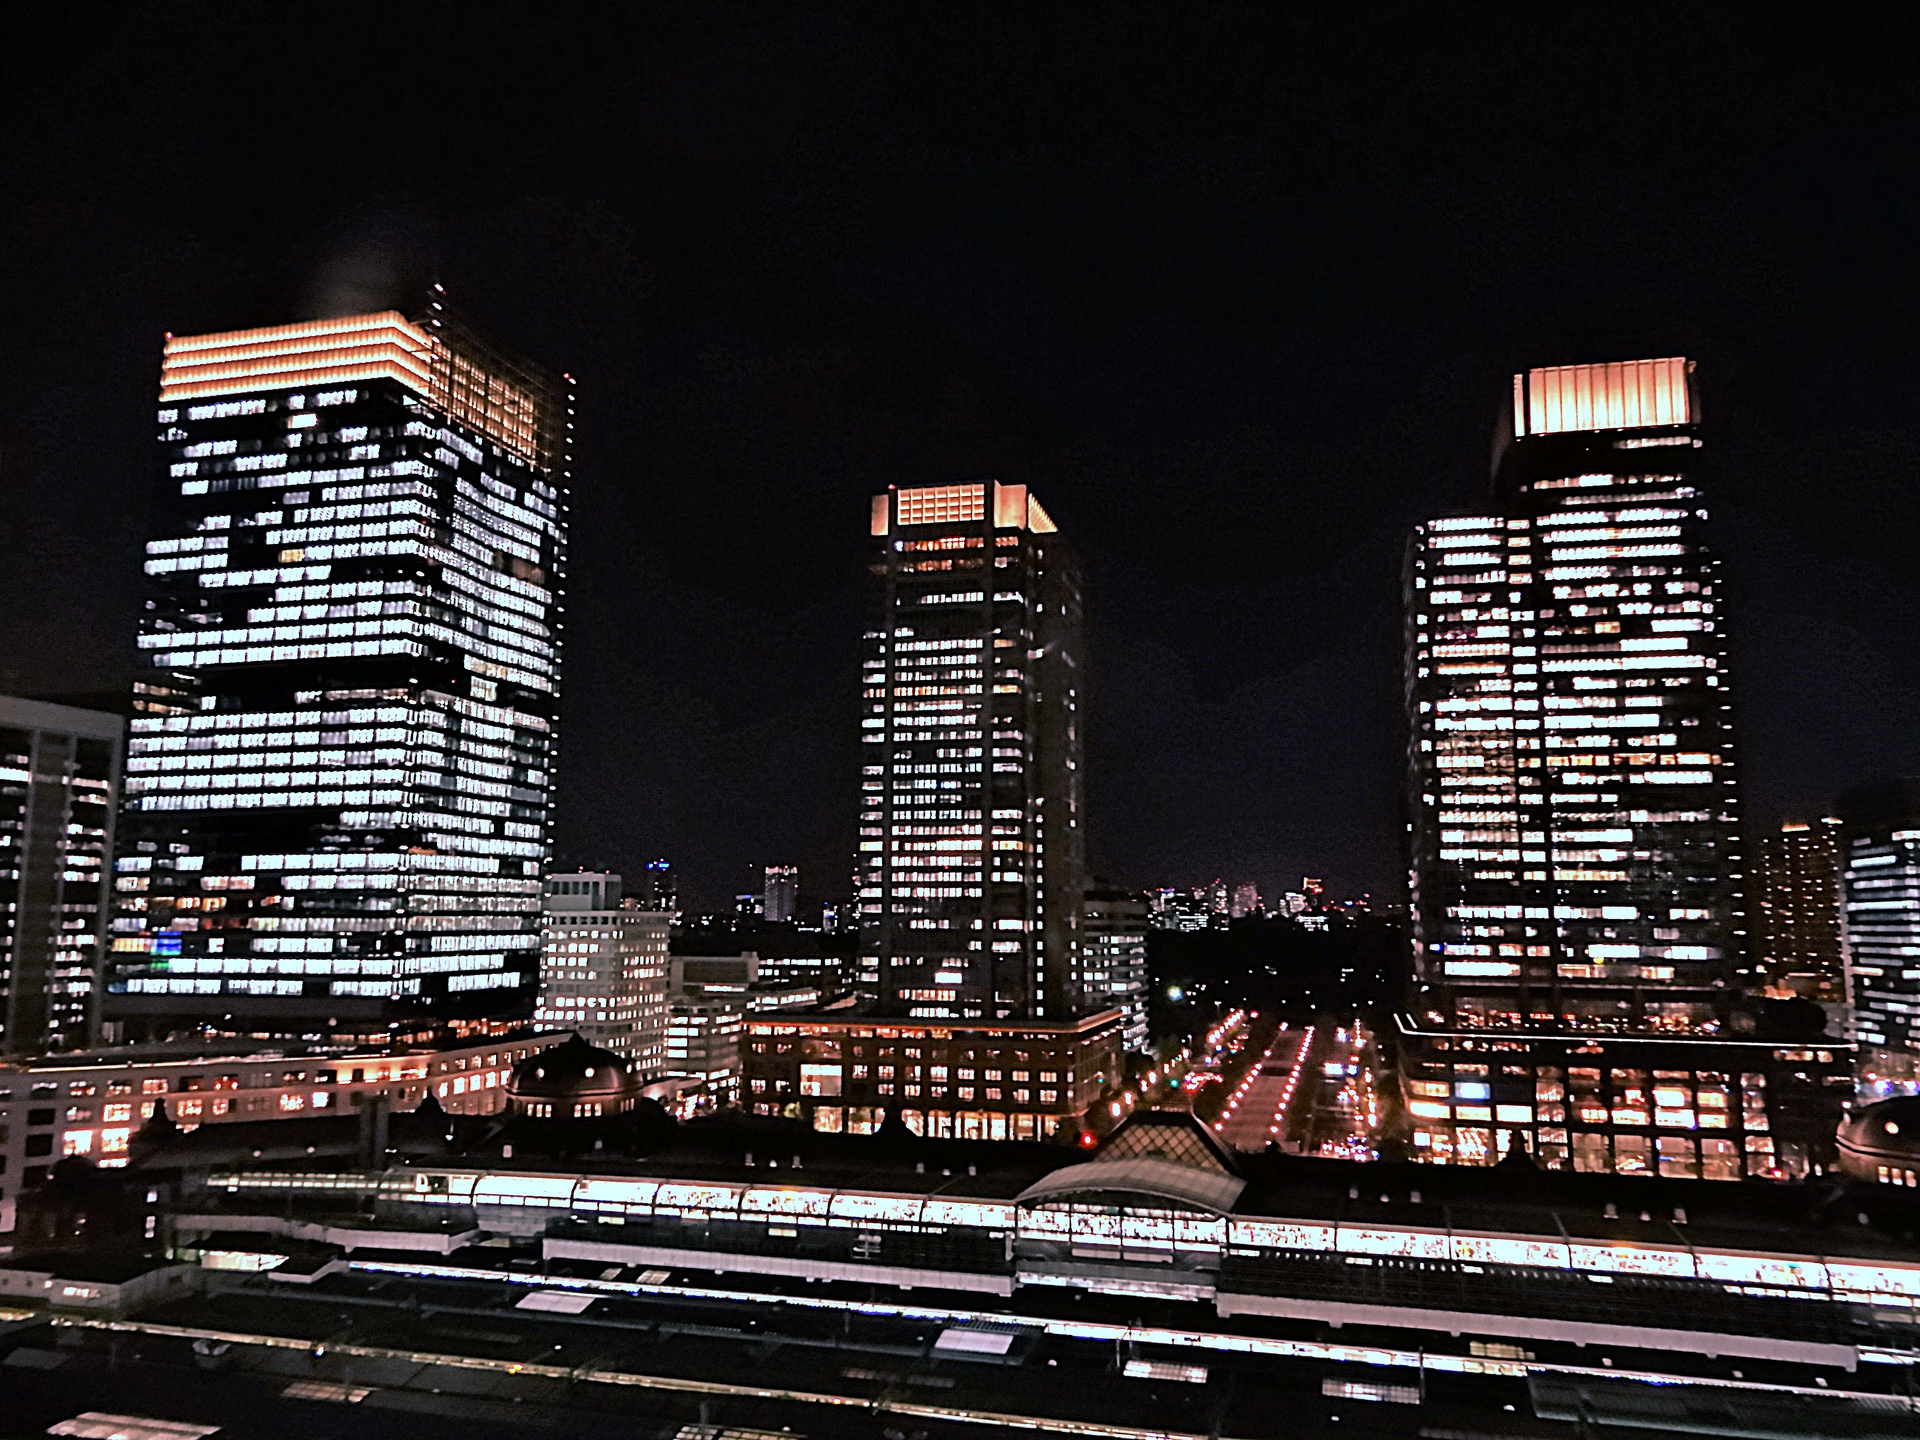 夜景 花火 イルミ 東京駅と丸の内の夜景 壁紙19x1440 壁紙館